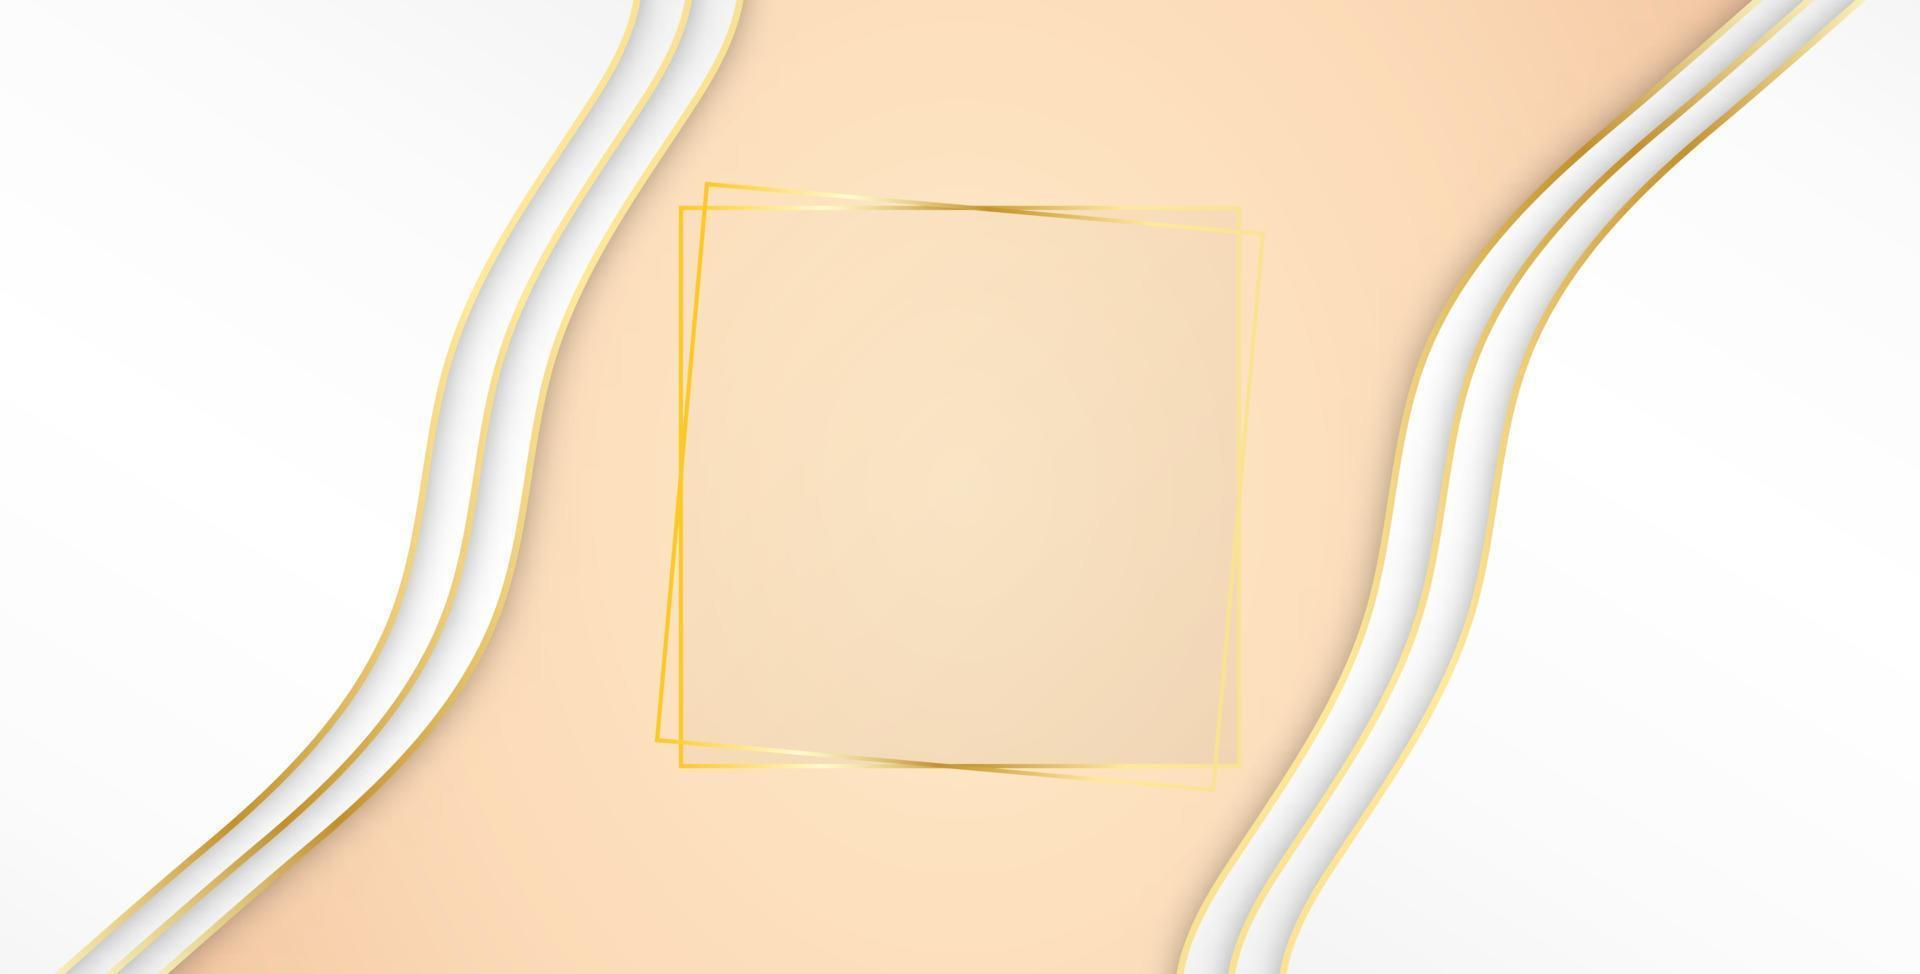 diseño de plantilla blanca y luz de fondo de lujo abstracto con plantilla cuadrada de brillo dorado. fondo de estilo superpuesto. ilustración vectorial el fondo rosa se superpone al ilustrador vectorial blanco vector